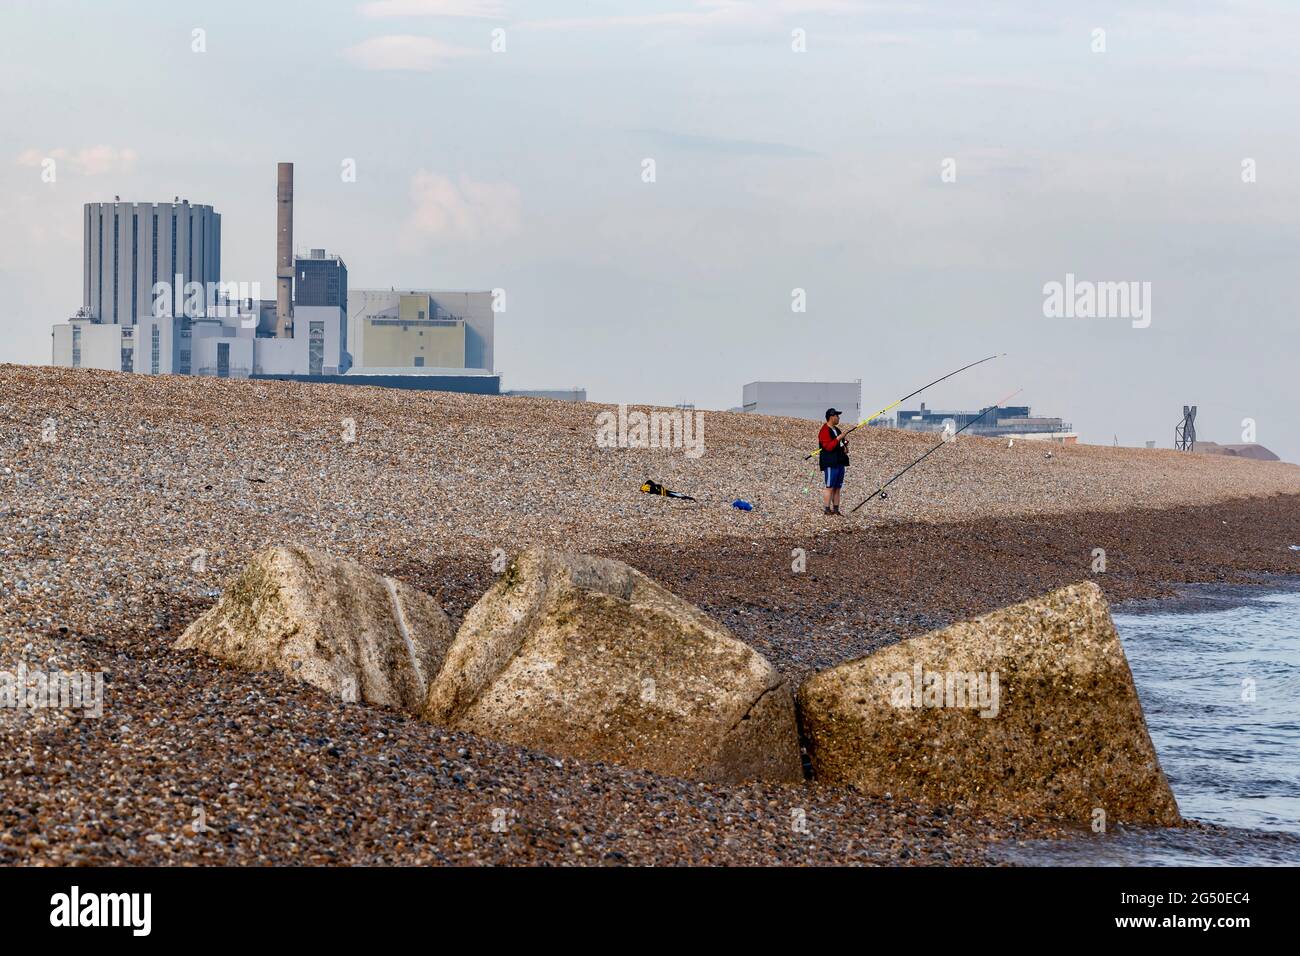 Station nucléaire de Dungeness vue de la plage de Dengemash avec un pêcheur sur le rivage, Romeny Marsh, Kent, Angleterre, Royaume-Uni. Banque D'Images